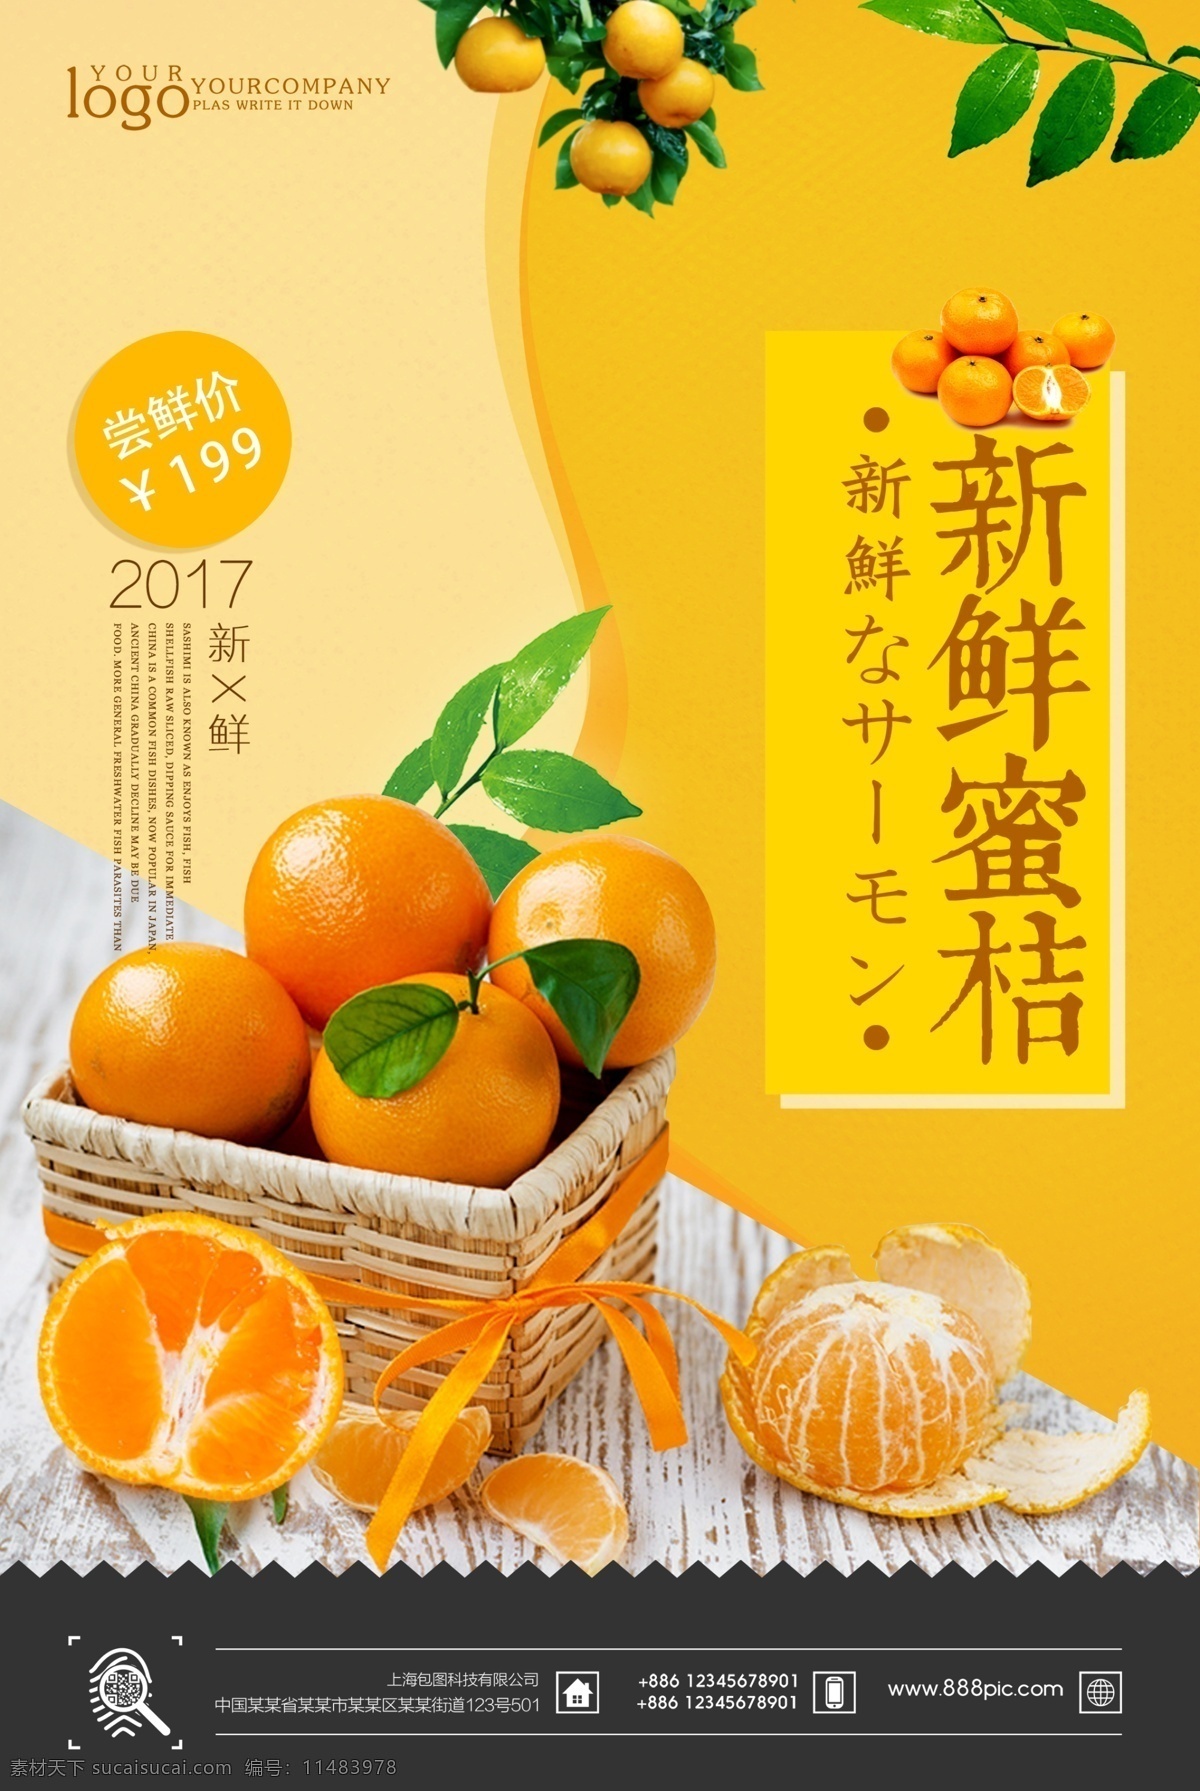 柑橘 农家橘子 桔子 金橘 橘子海报 橘子宣传单 橘子水果 新鲜橘子 水果海报